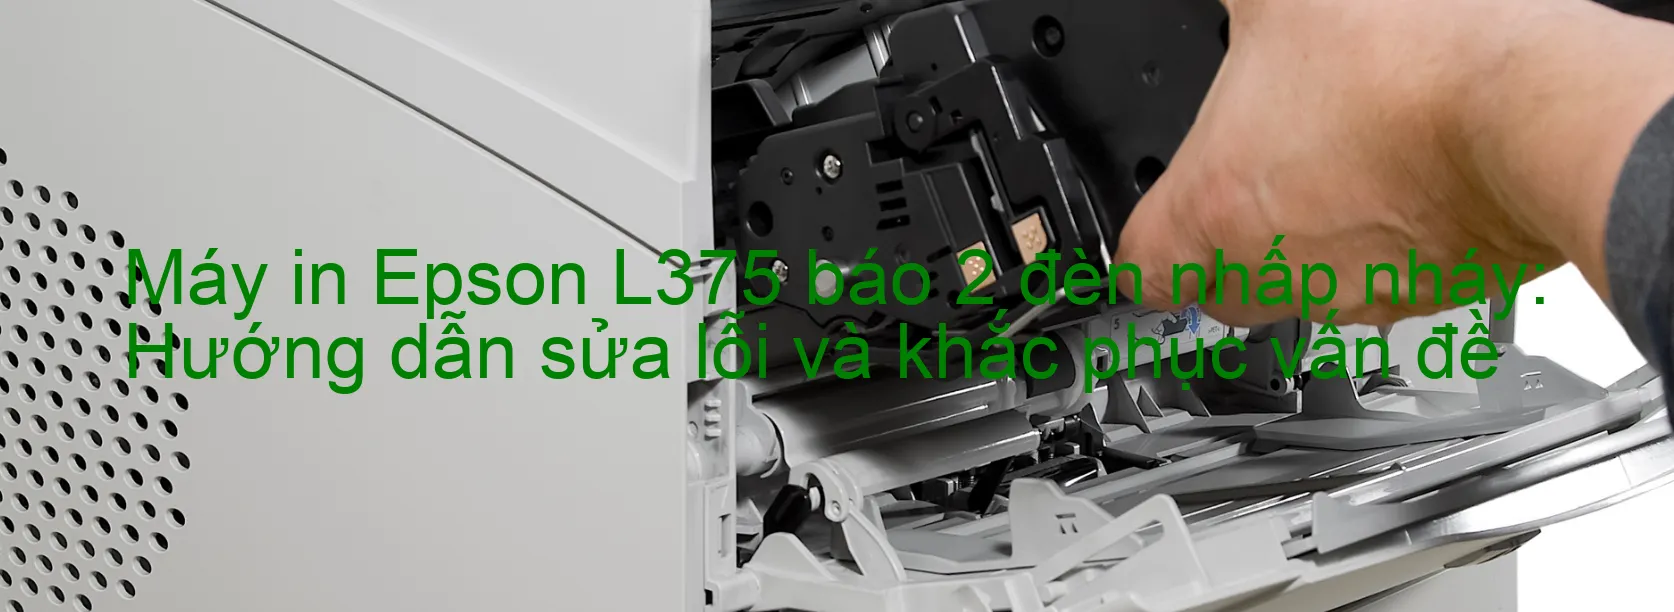 Máy in Epson L375 báo 2 đèn nhấp nháy: Hướng dẫn sửa lỗi và khắc phục vấn đề